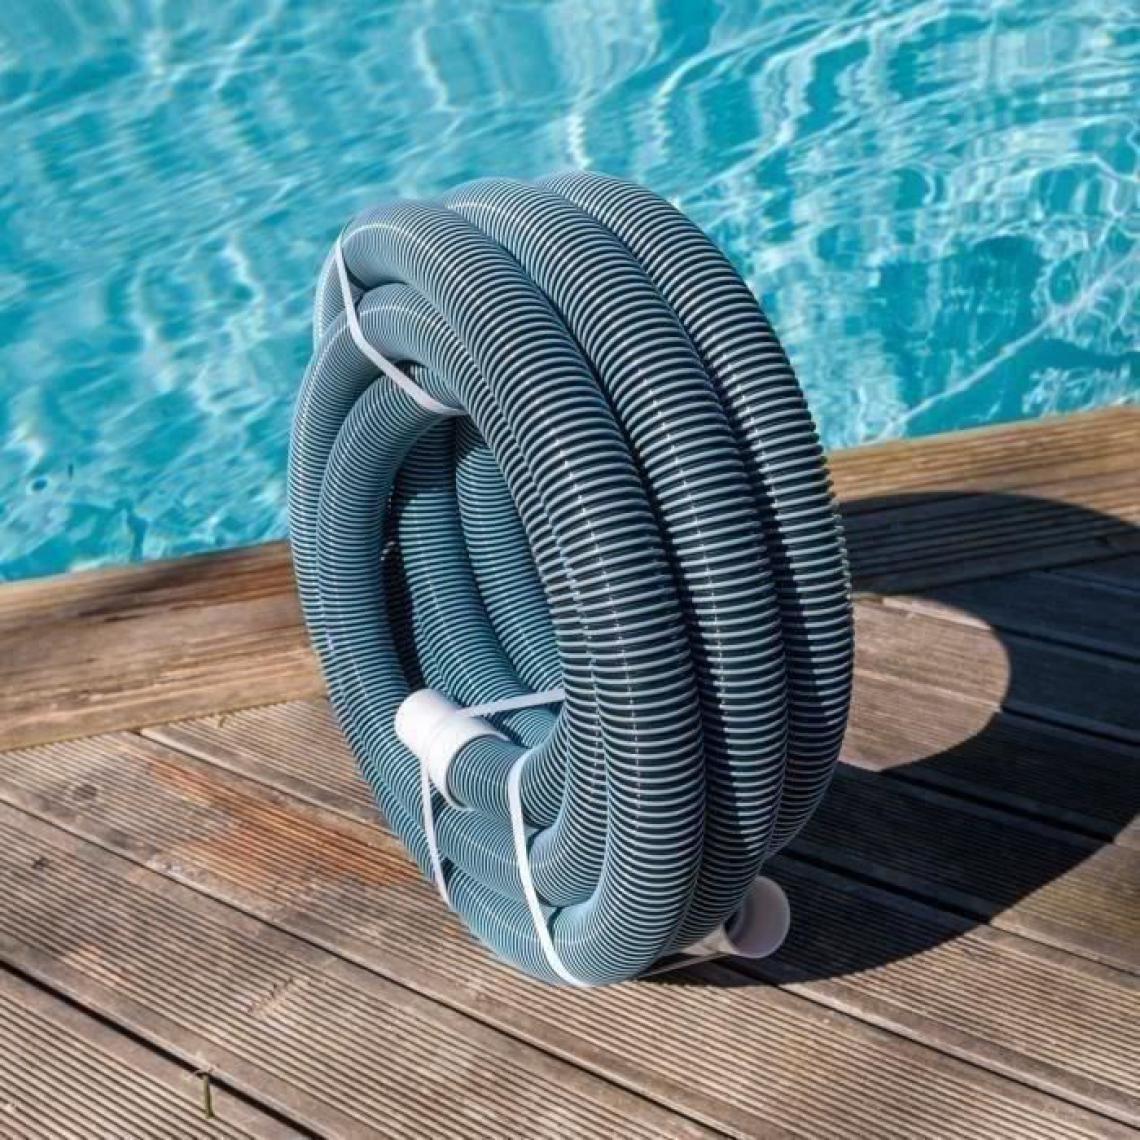 Spool - SPOOL -Tuyau flottant pour aspiration piscine avec embouts - Ø 38mm - 9 m - Pièces à sceller